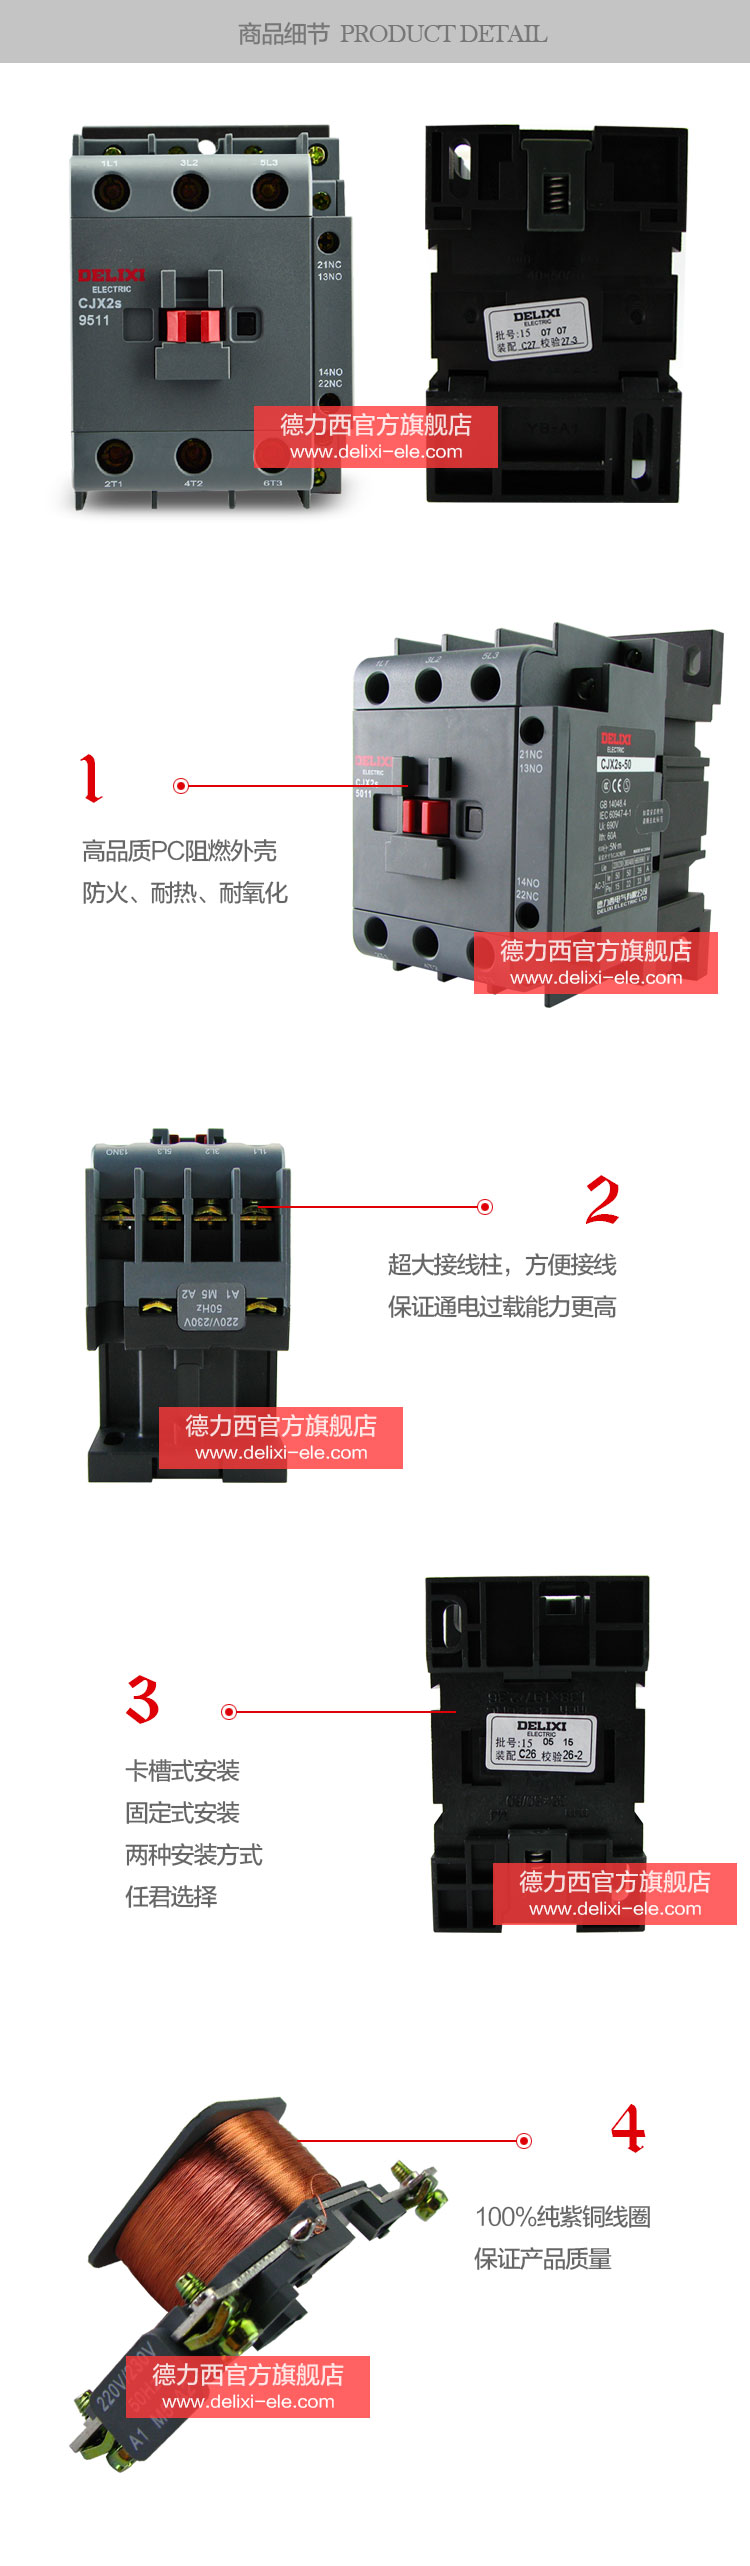 德力西交流接触器CJX2S-4011产品细节展示高品质阻燃材料，防火耐热耐氧化，超大接线柱卡槽式安装，100%纯紫铜线圈